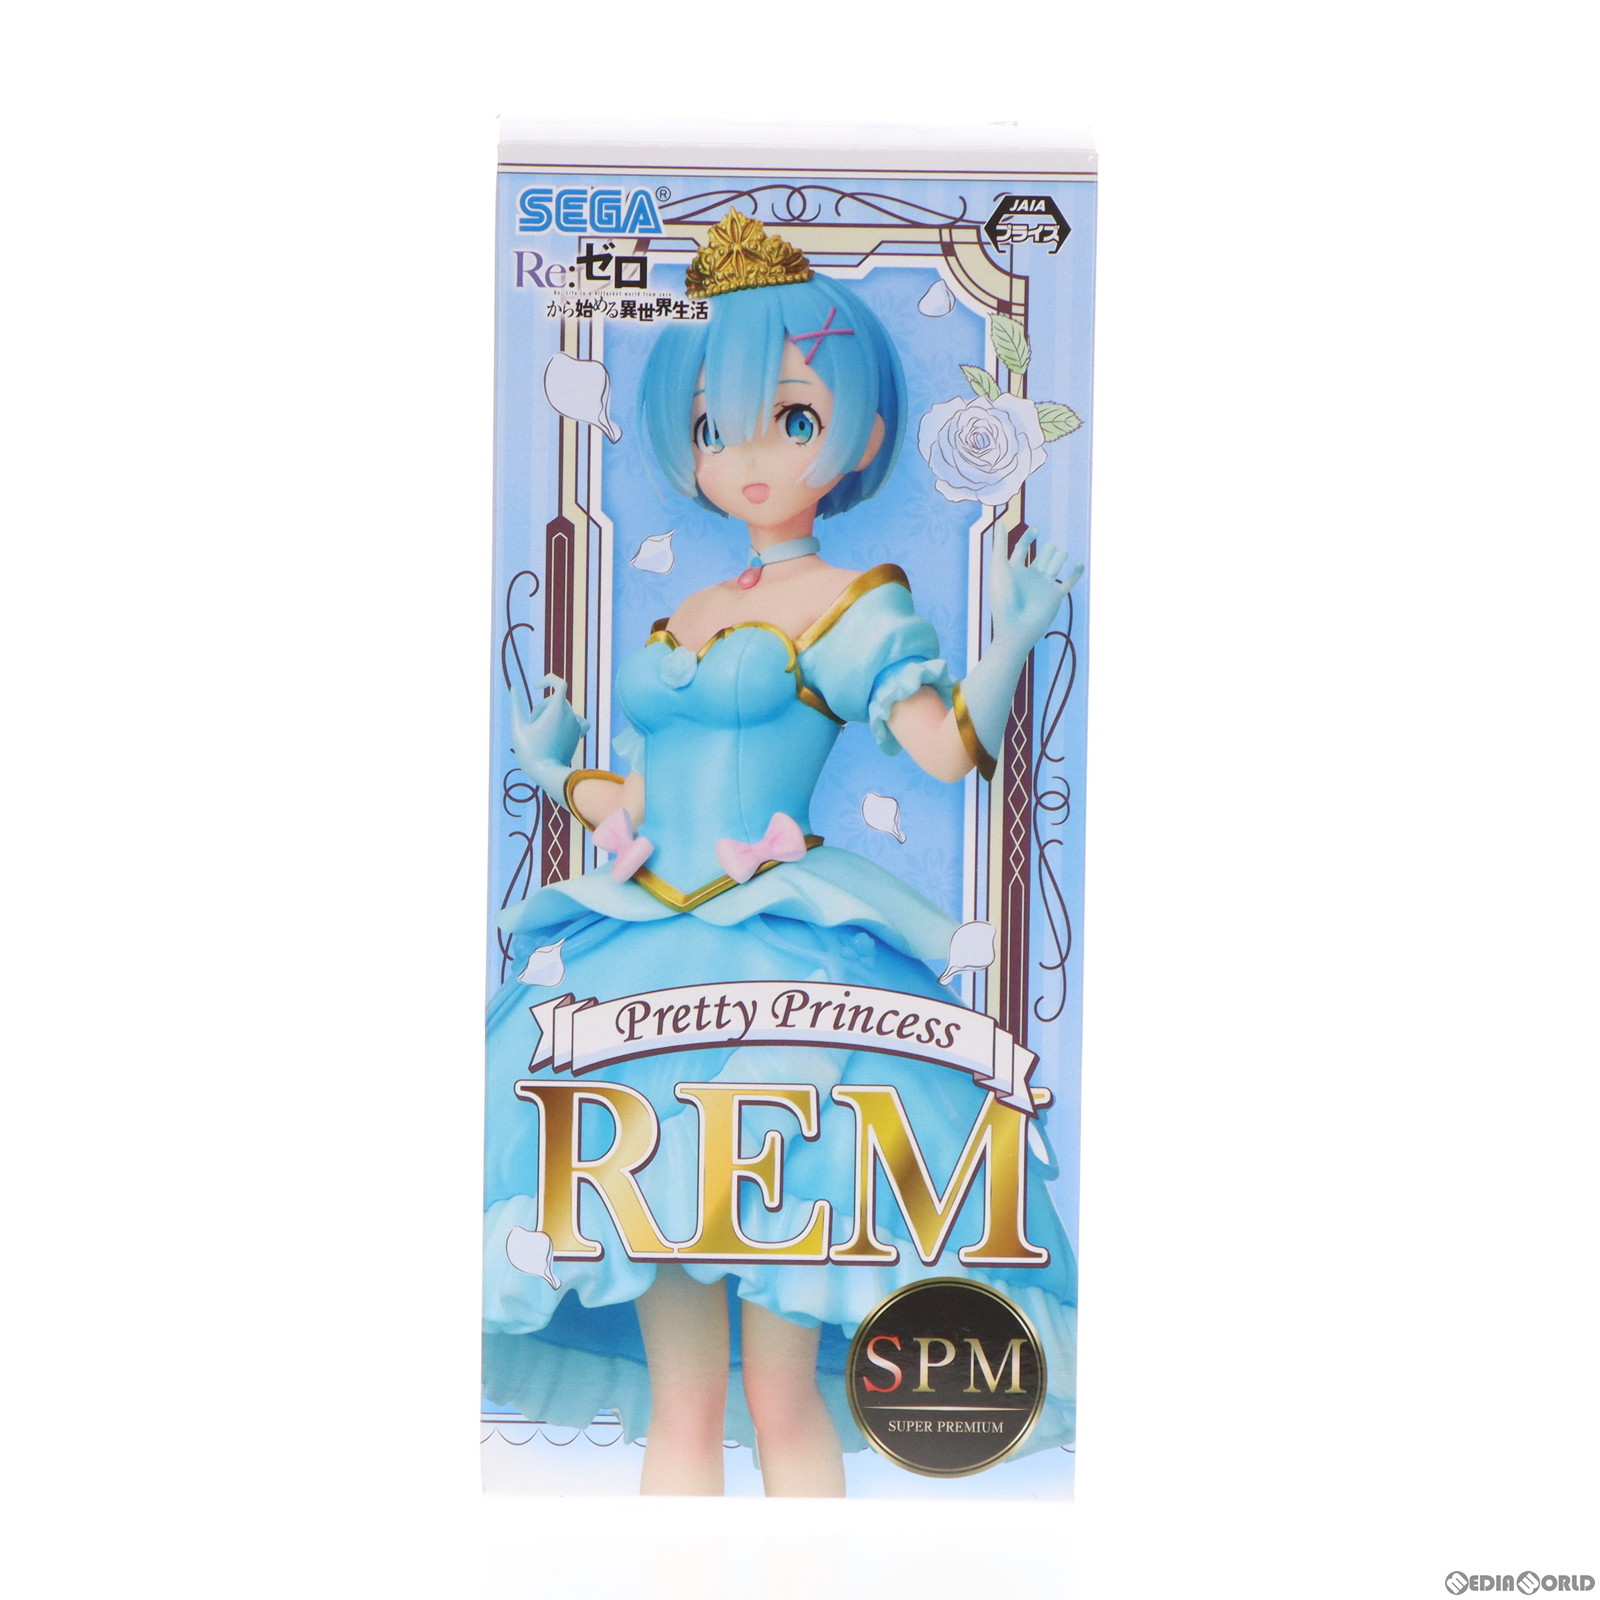 【中古即納】[FIG]レム Pretty Princess Ver. スーパープレミアムフィギュア Re:ゼロから始める異世界生活 プライズ セガ(20210131)